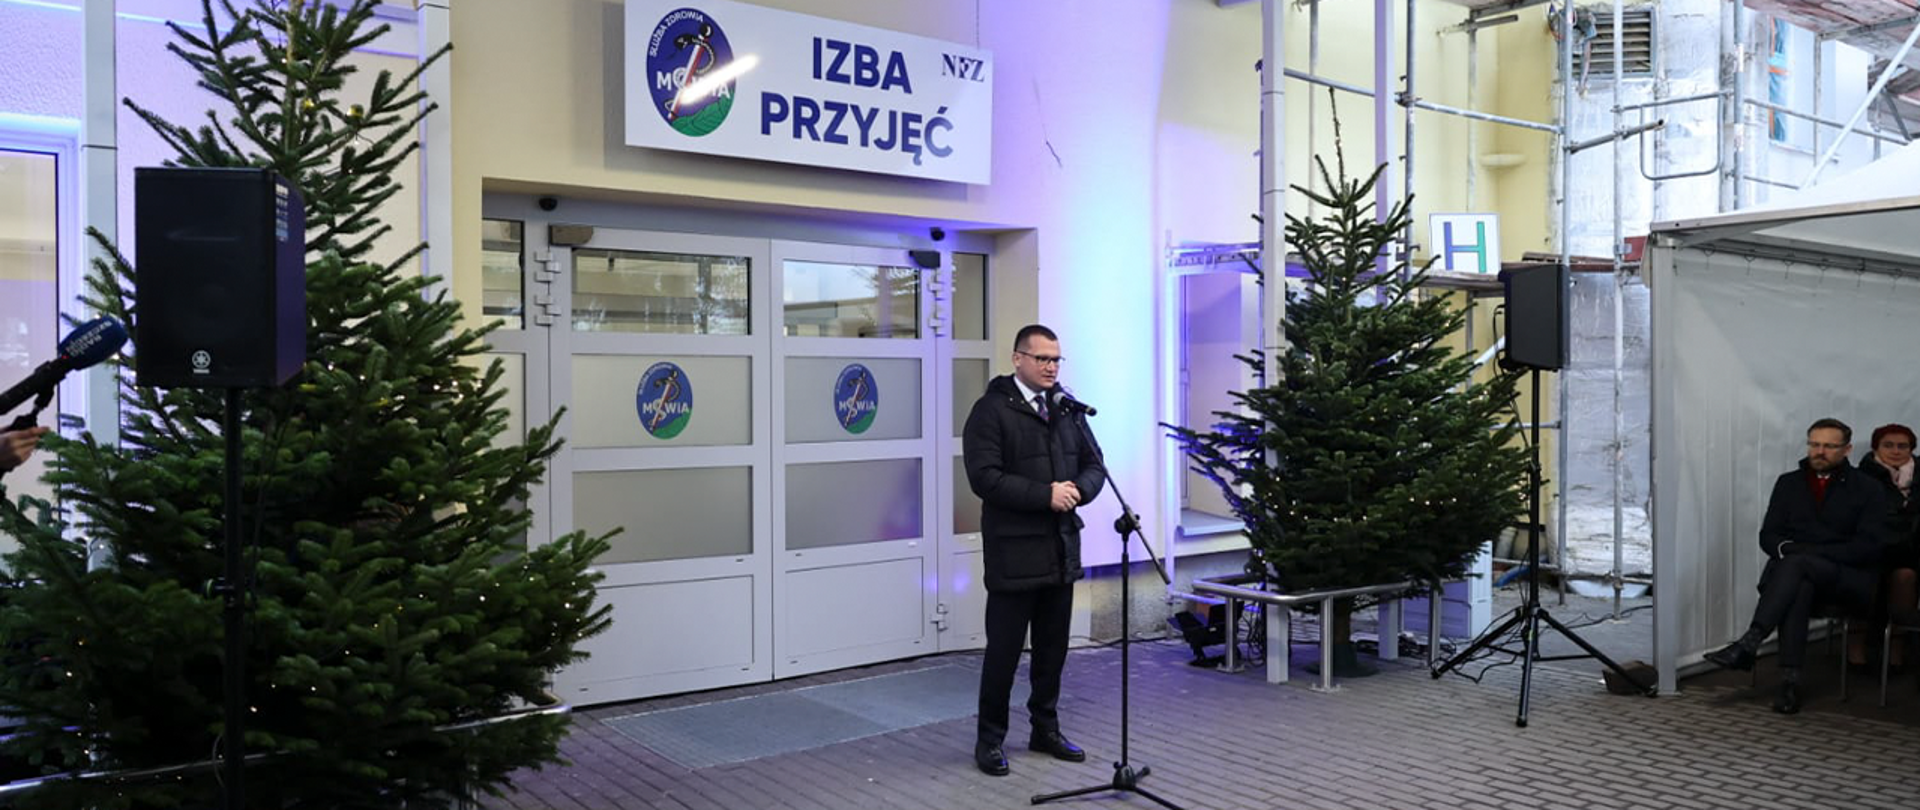 Wiceminister Paweł Szefernaker wziął udział w oficjalnym otwarciu zmodernizowanej Izby Przyjęć Samodzielnego Publicznego Zakładu Opieki Zdrowotnej MSWiA 